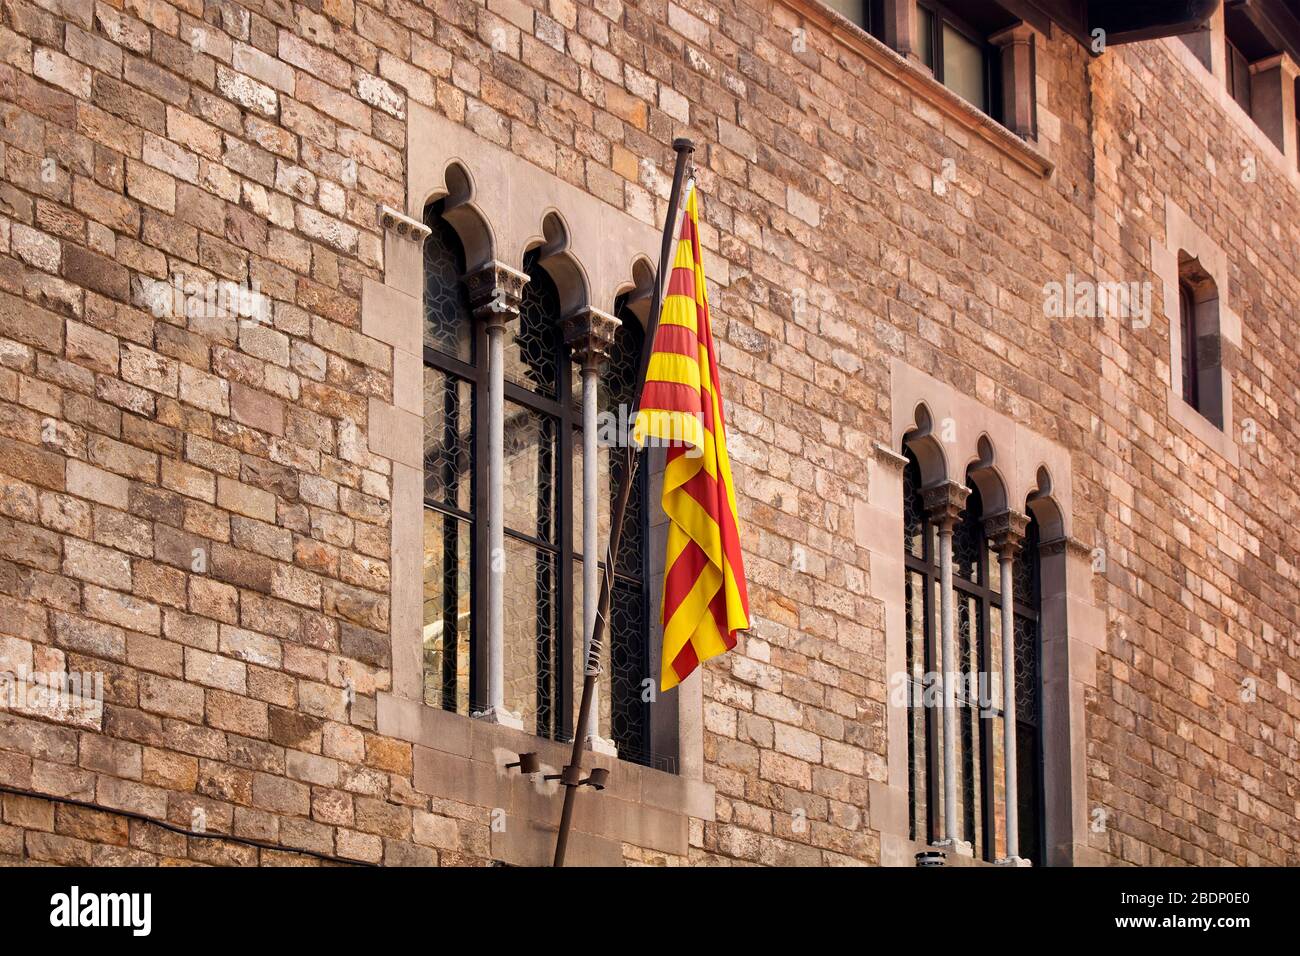 Blick auf die katalanische Flagge im historischen, alten Gebäude im Stadtteil Ciutat Vella (Gotisches Viertel) in Barcelona. Es ist ein sonniger Sommertag. Stockfoto